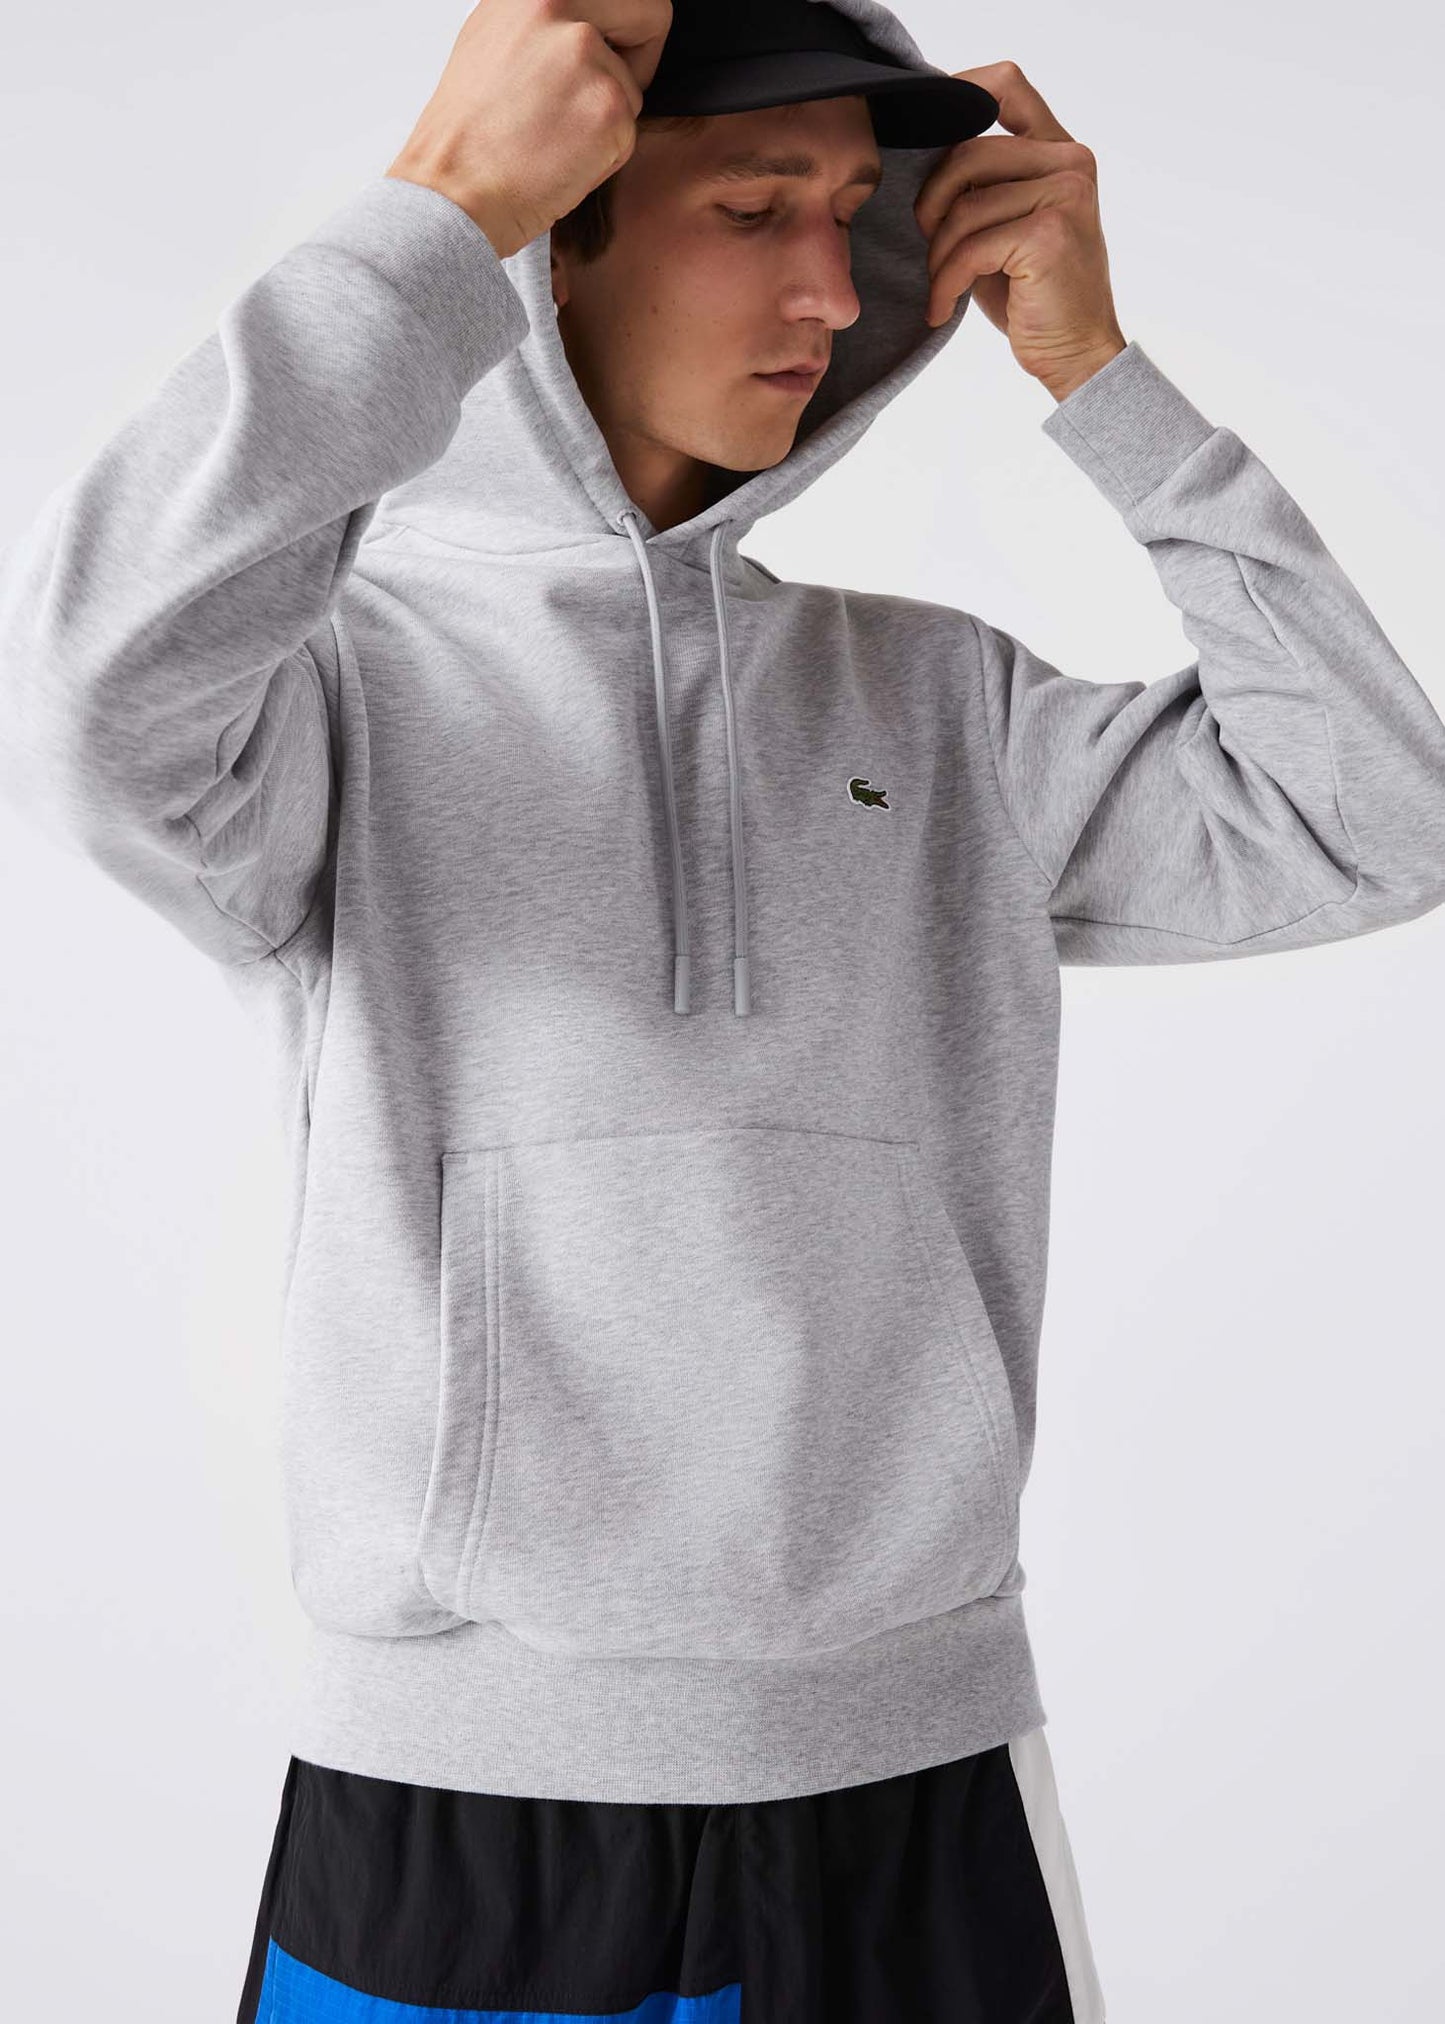 Lacoste hoodie grey